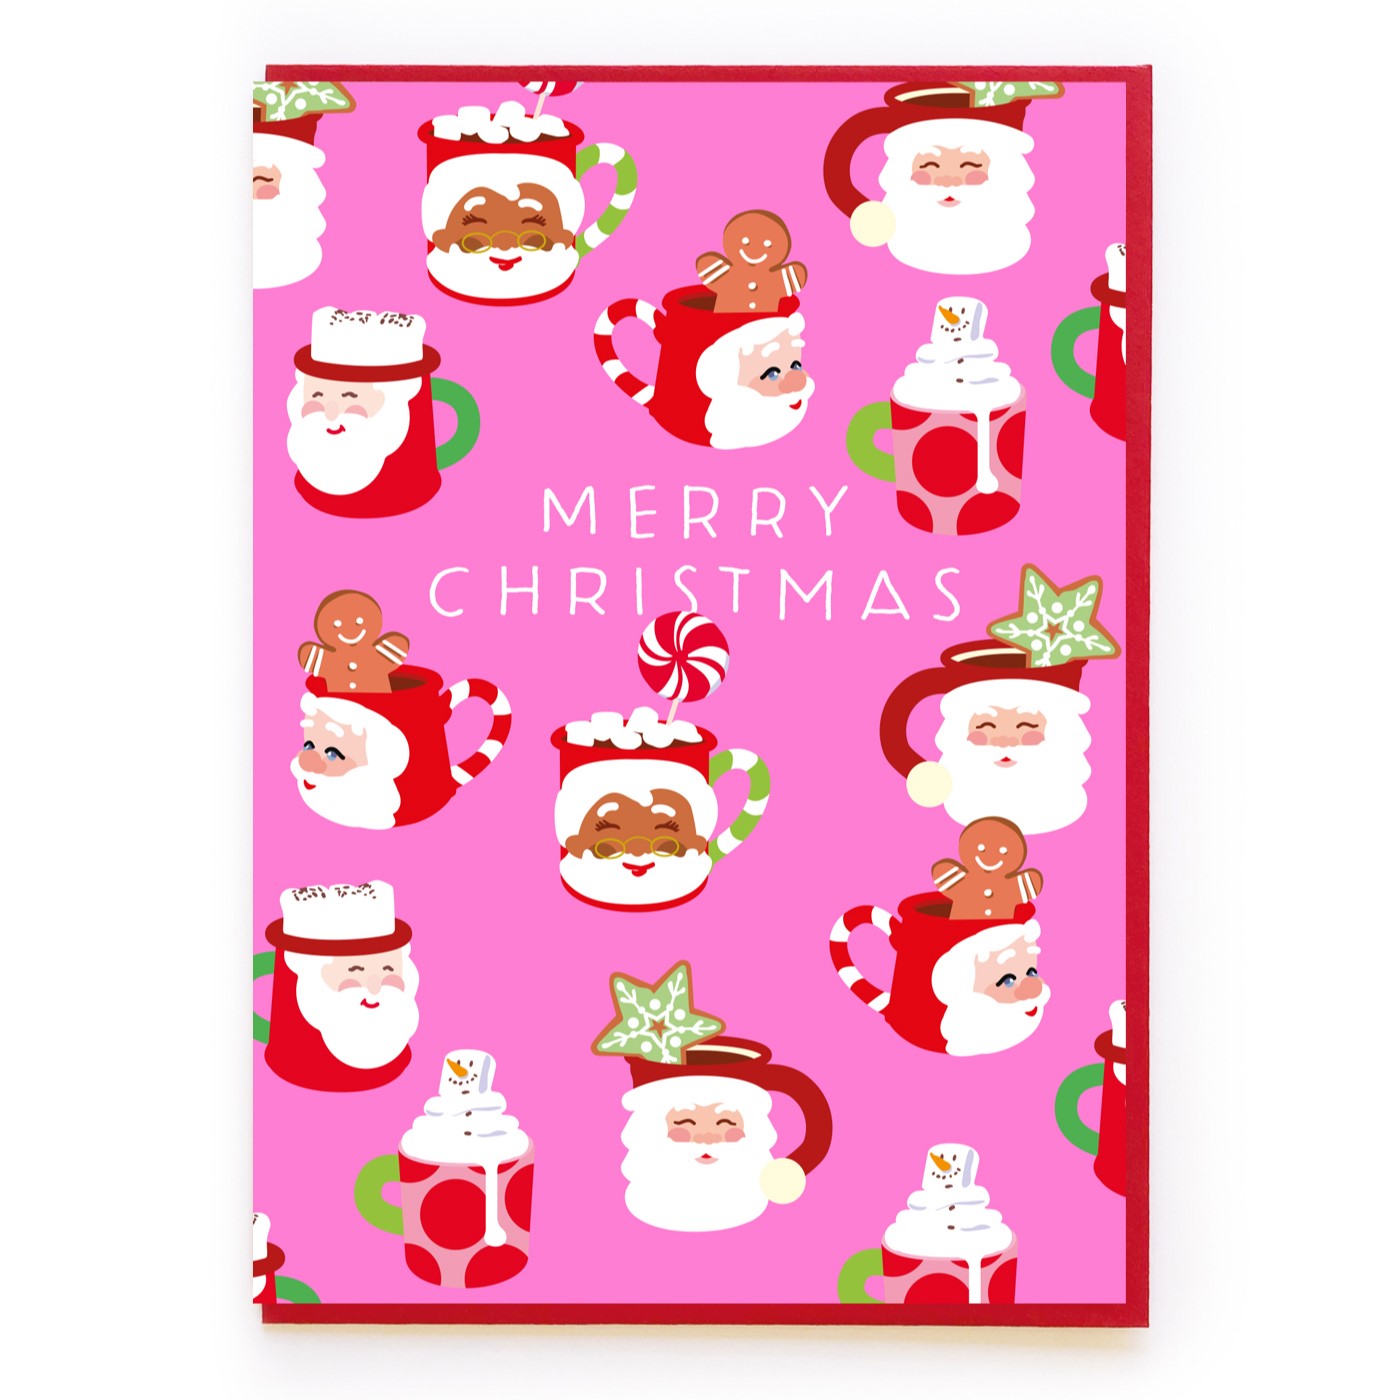 Christmas mugs card